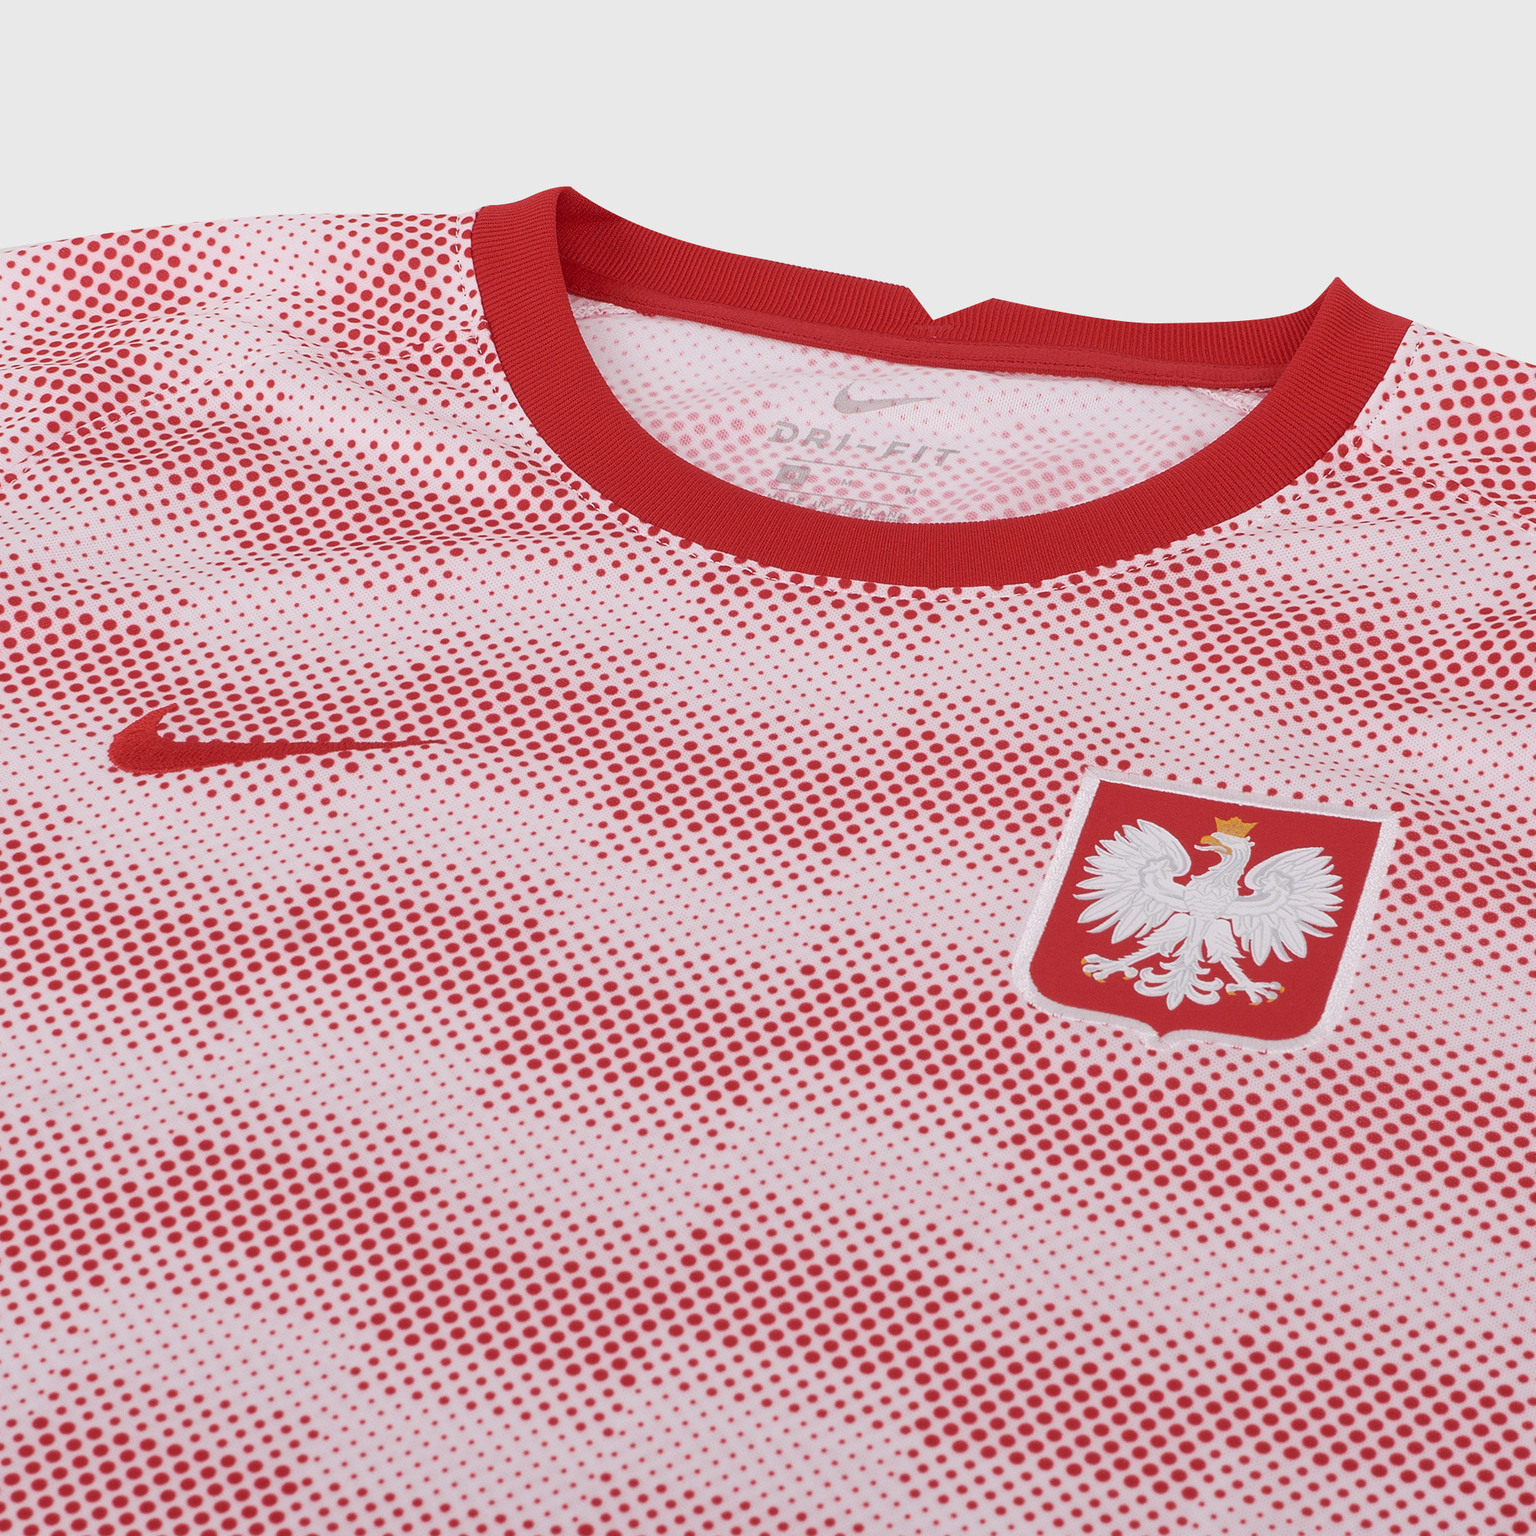 Футболка предыгровая Nike сборной Польши сезон 2020/21